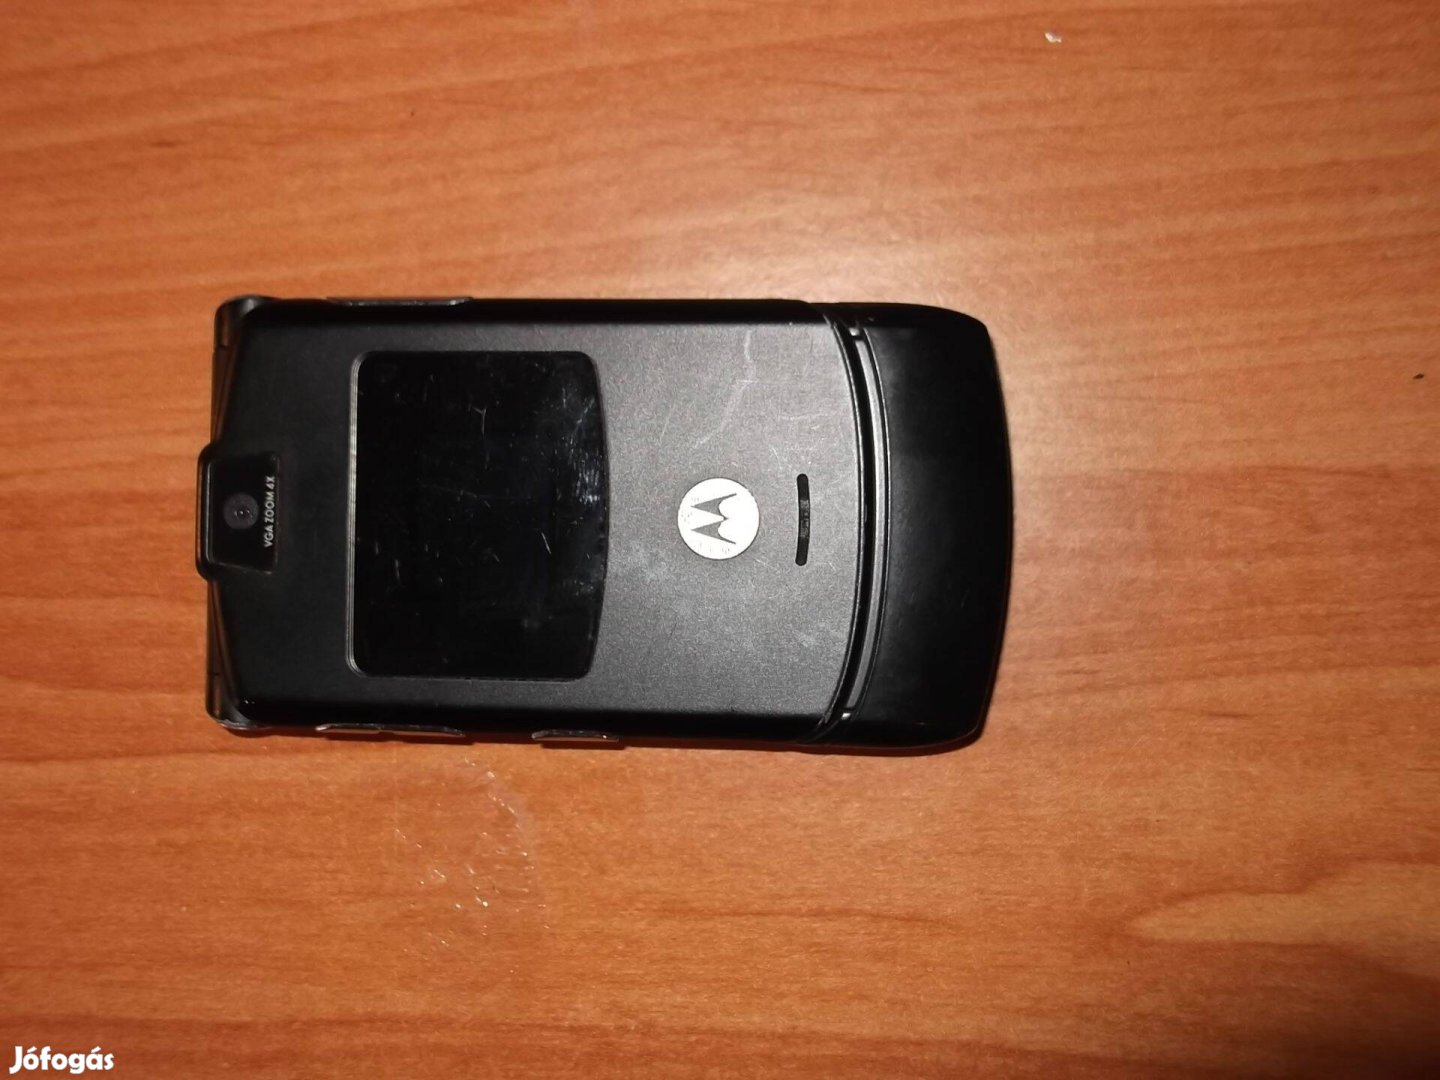 Eladó egy Motorola V3 független, magyar menü nélküli készülék